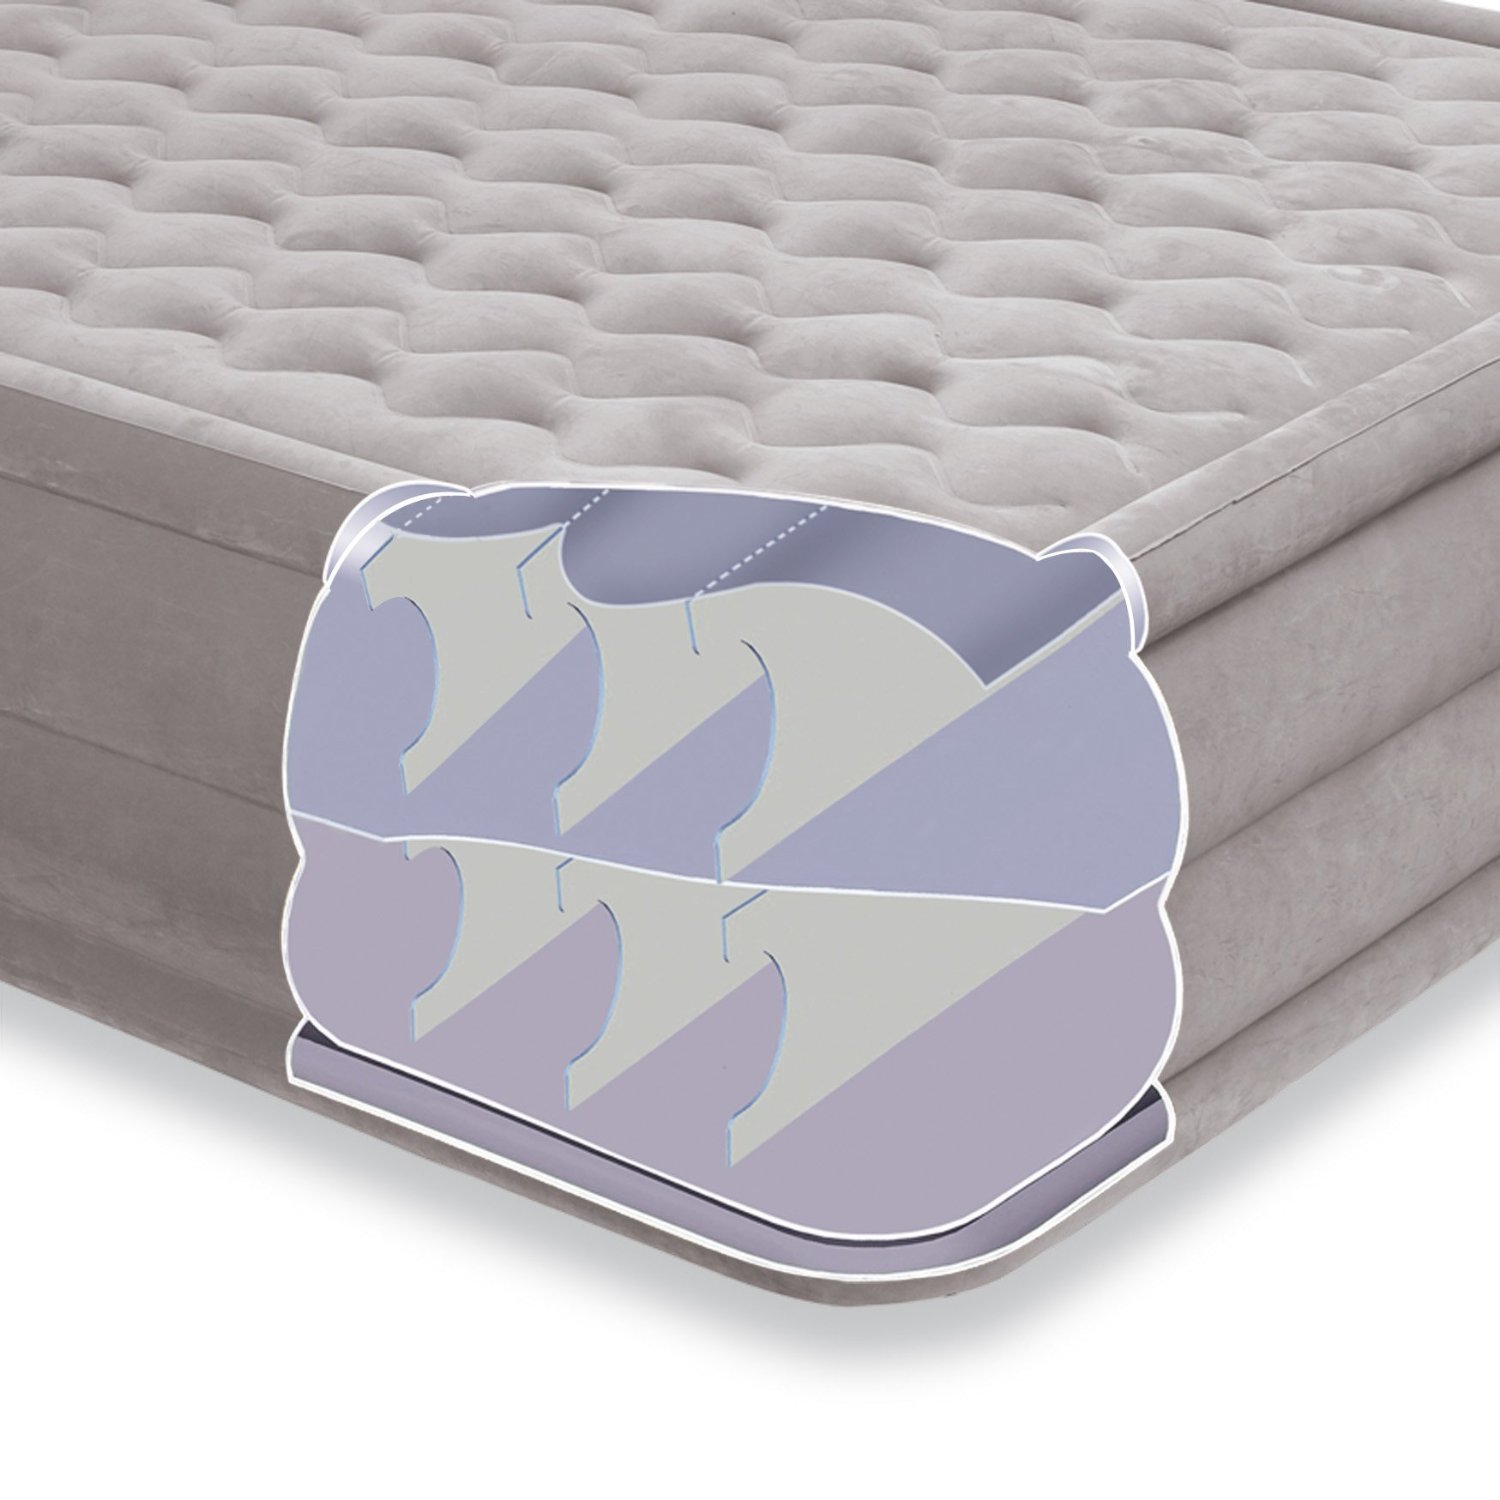 Надувная кровать Intex 67952